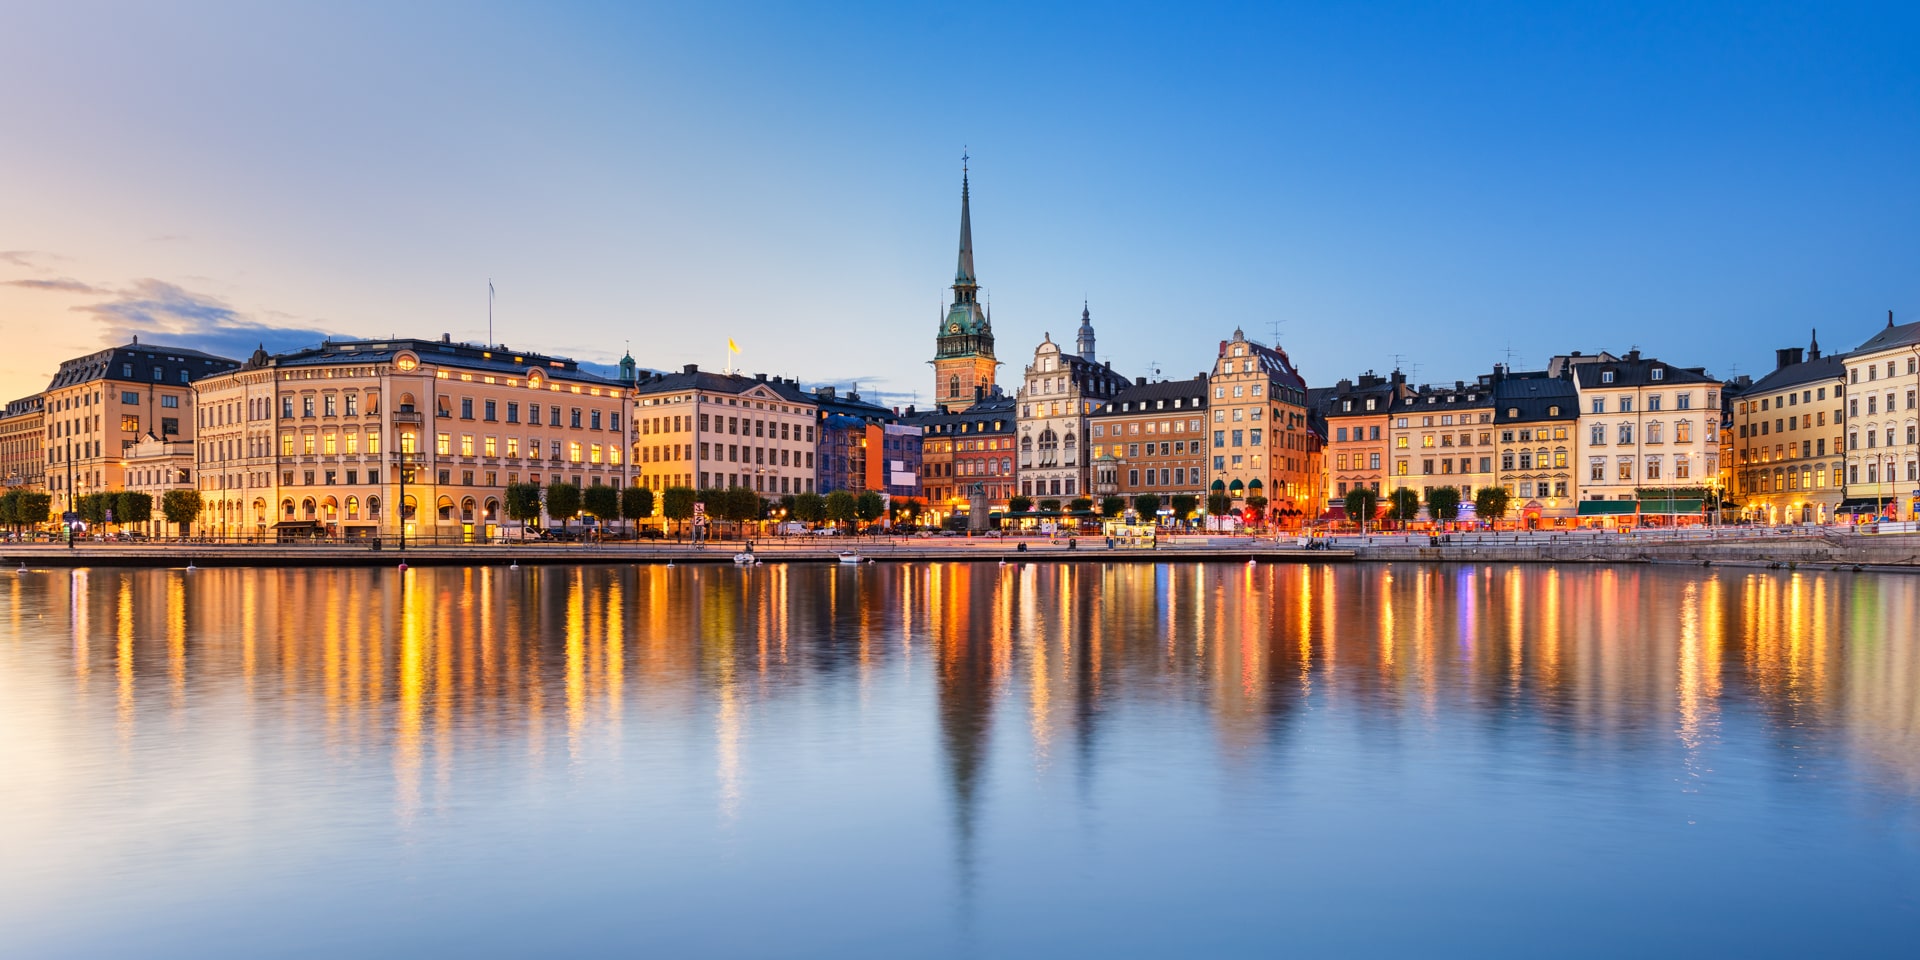 Що подивитись і чим зайнятися в Стокгольмі? ТОП 10 місць